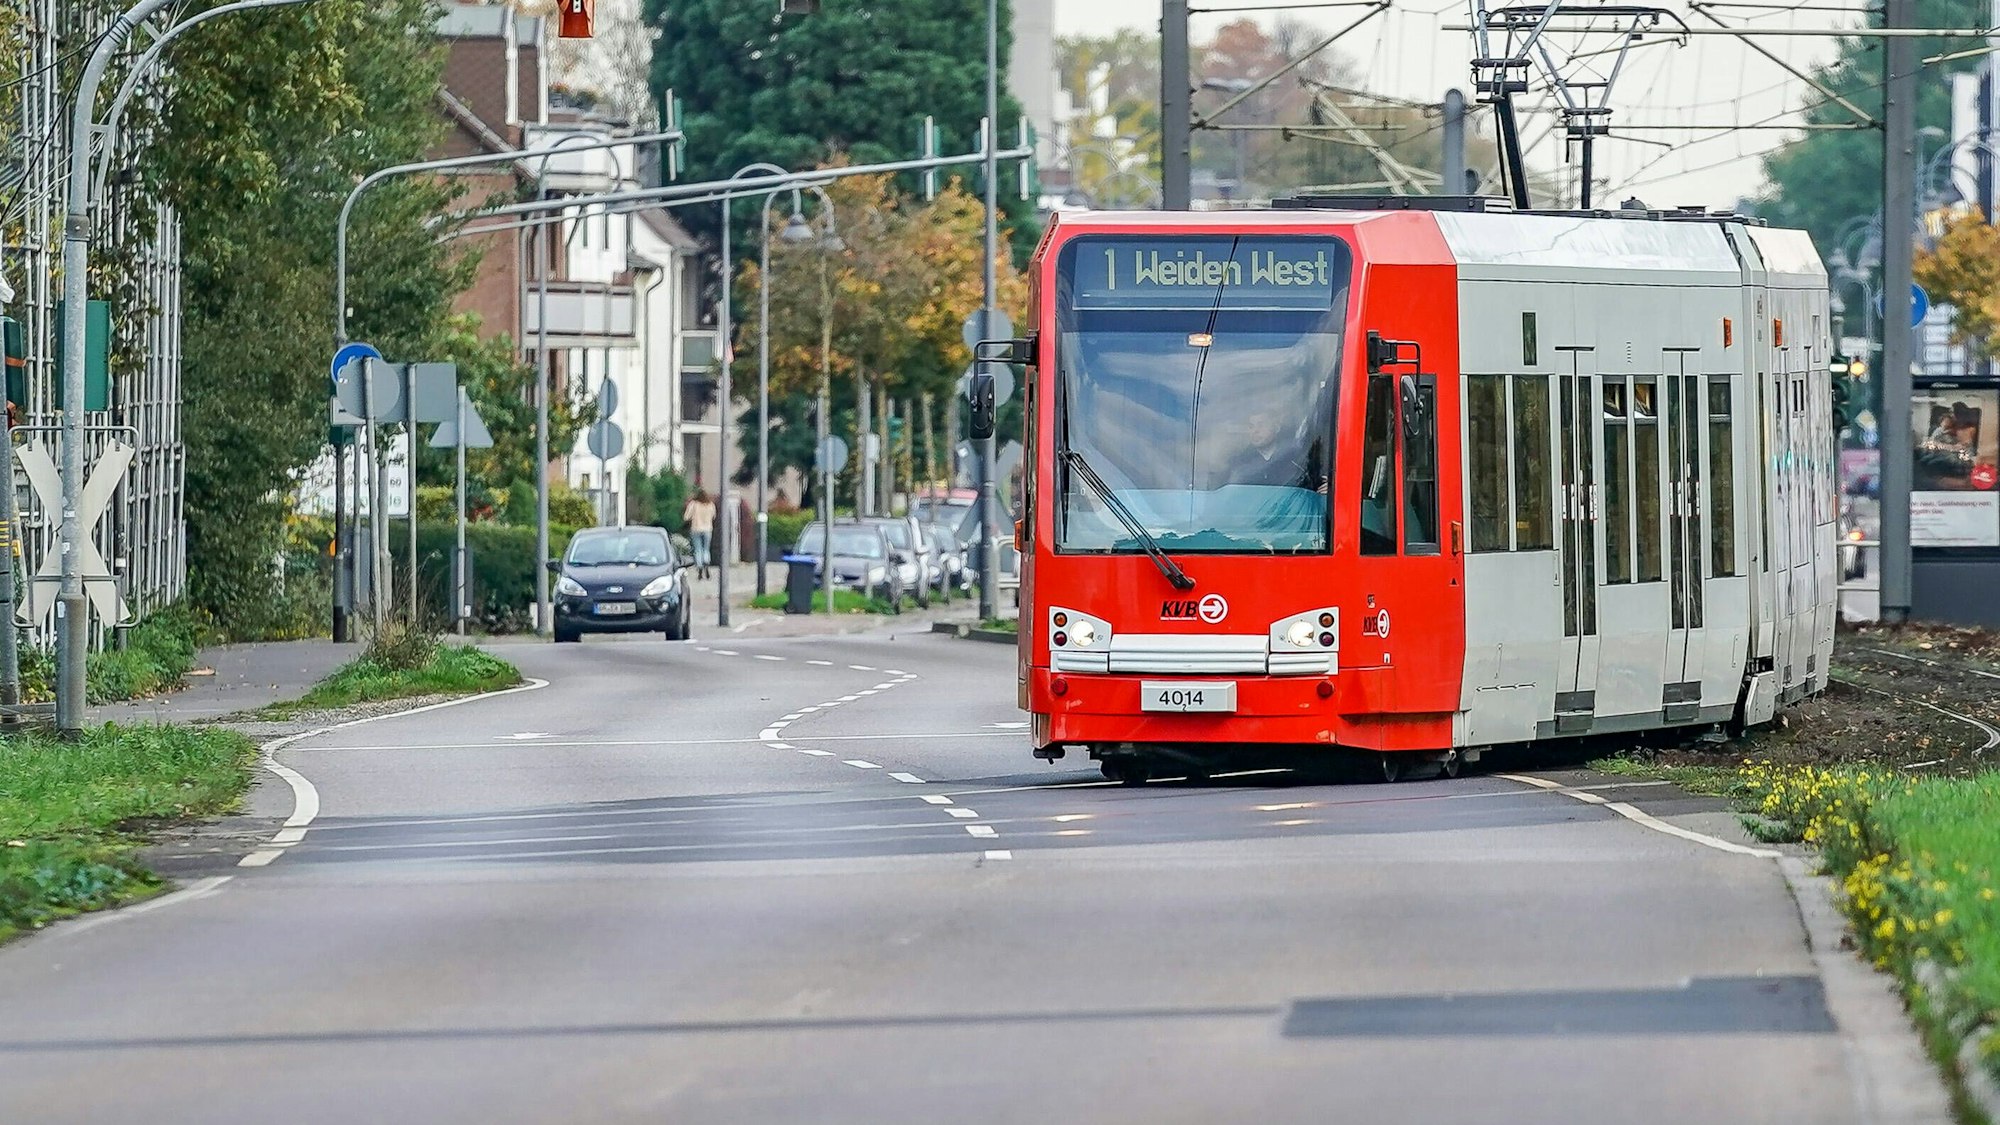 Symbolfoto einer Straßenbahn der Linie 1 Richtung Weiden West beim Überqueren einer Straße in Köln